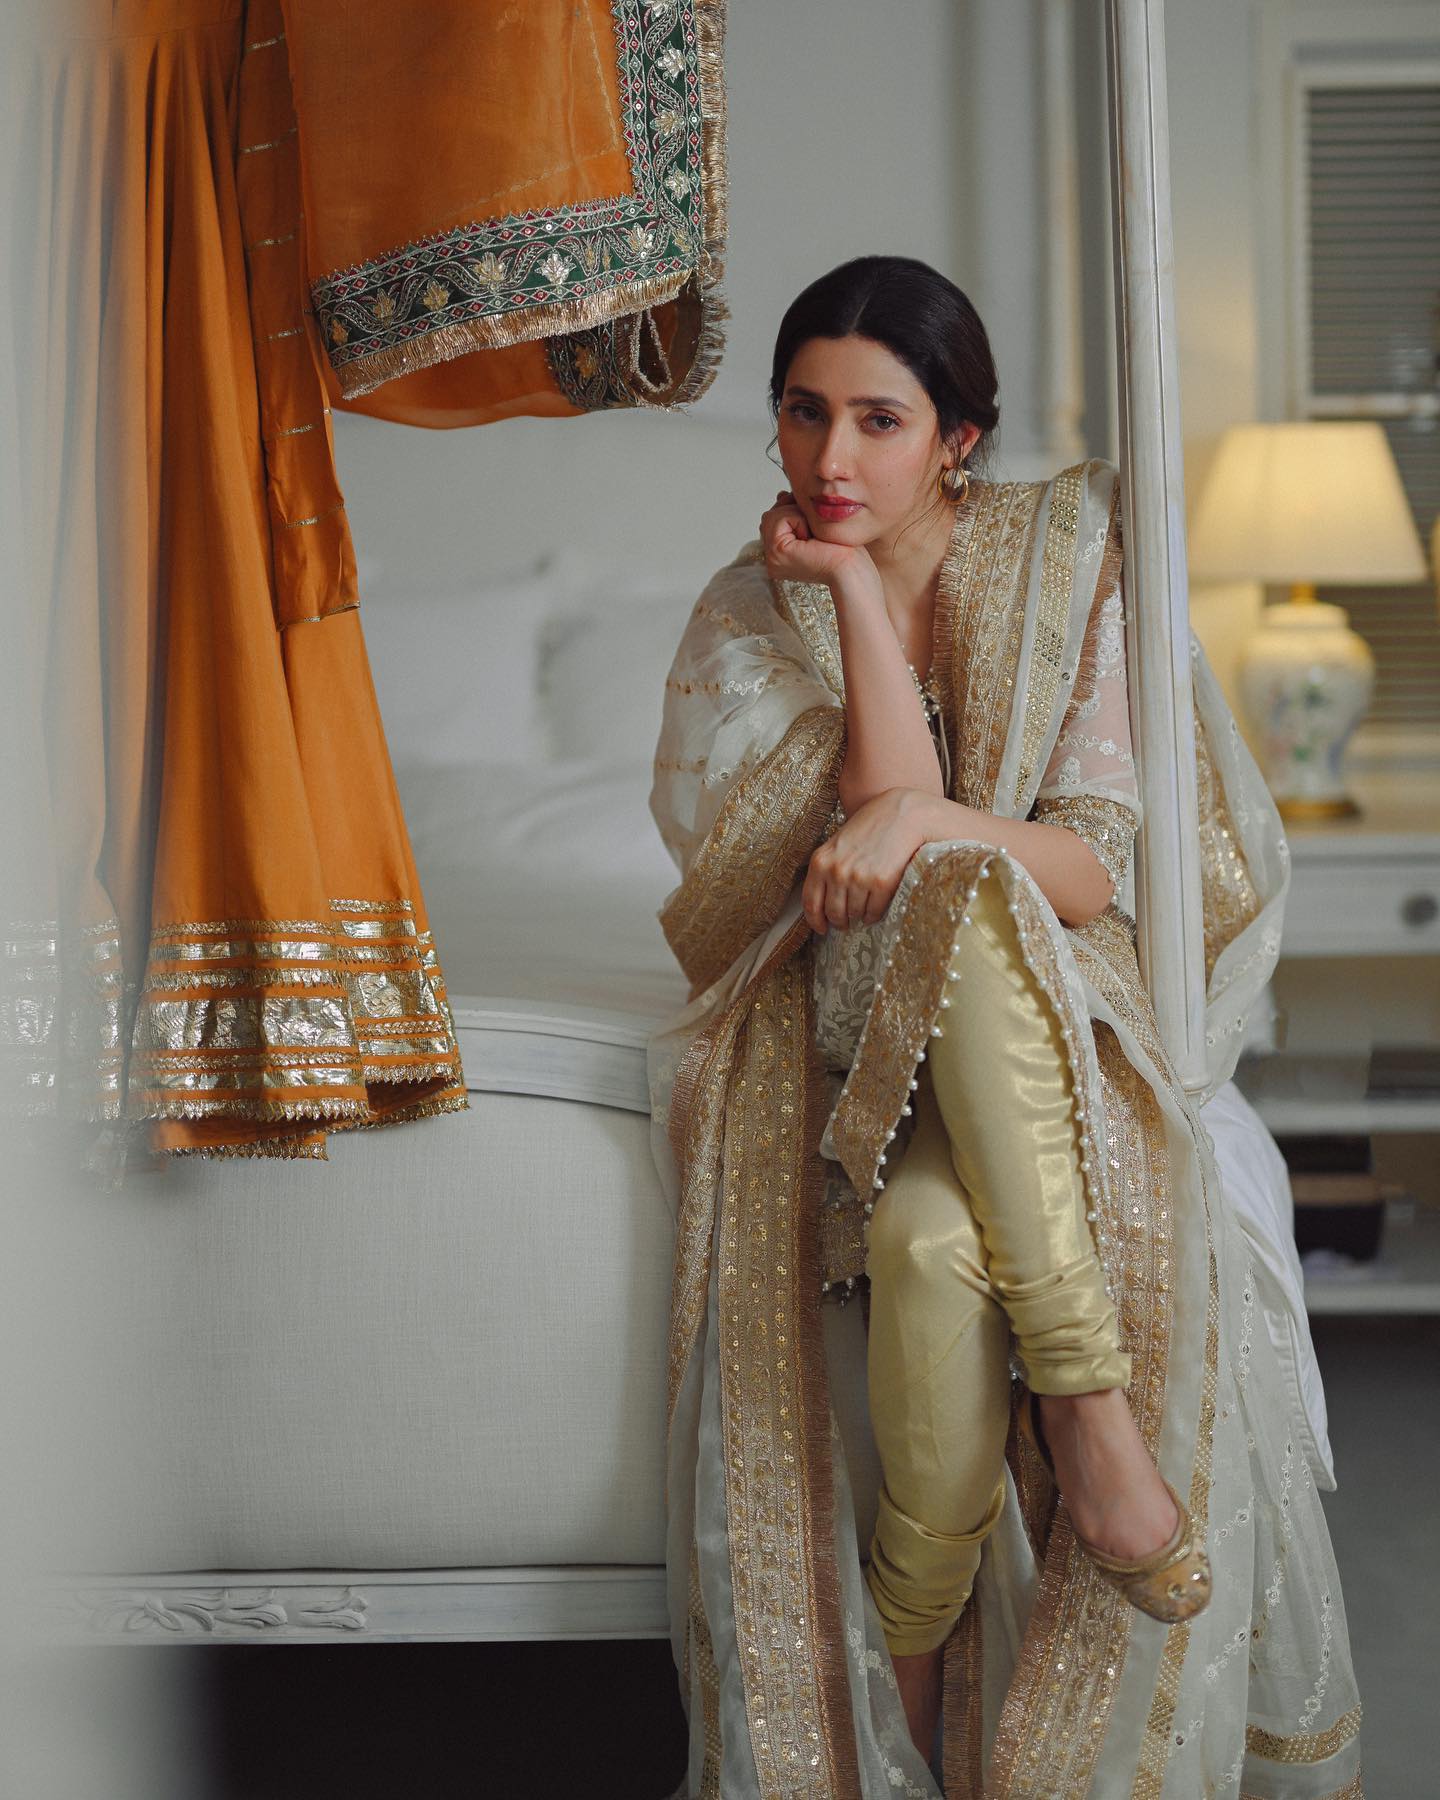 Mahira Khan's Pre-Wedding Looks